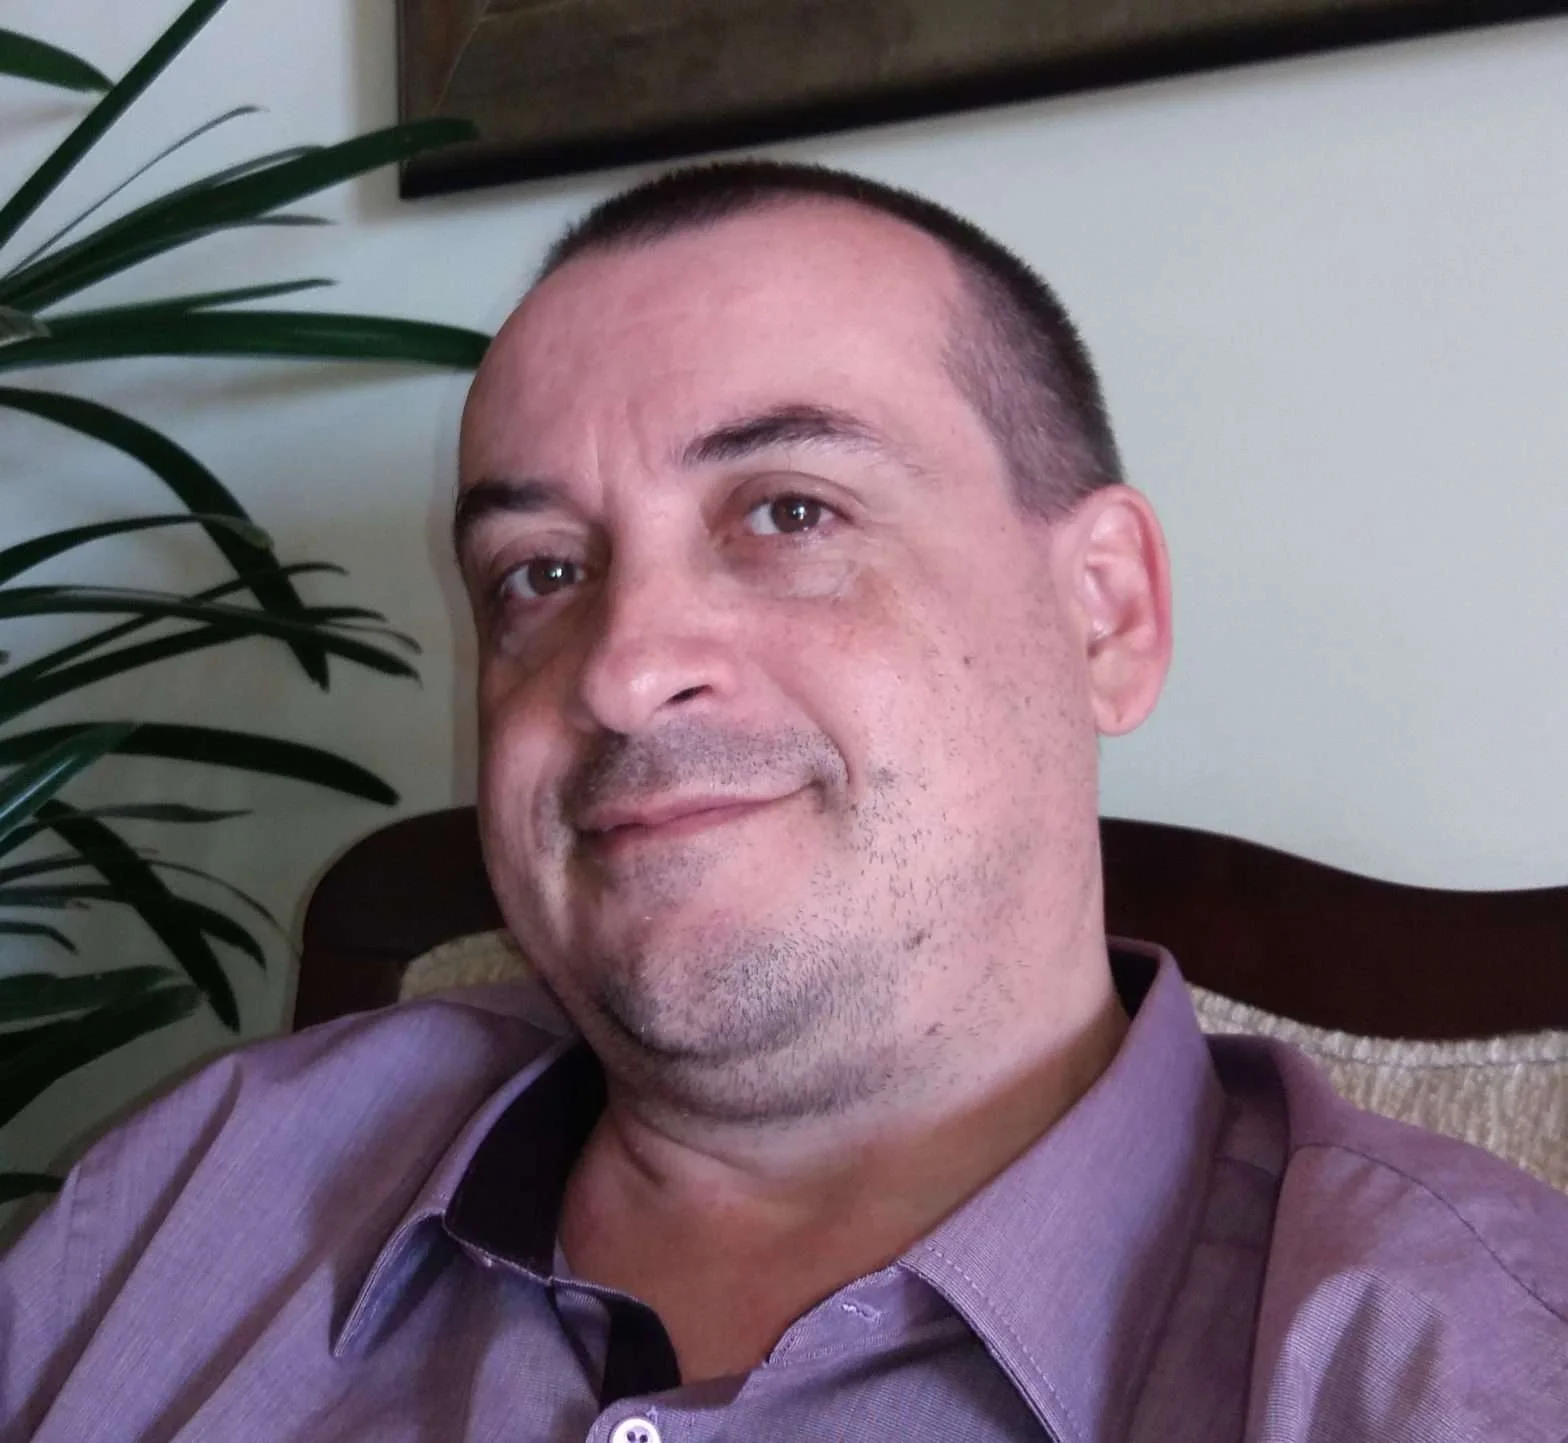 Psicólogo Emilson Silva com camisa roxa e sorrindo